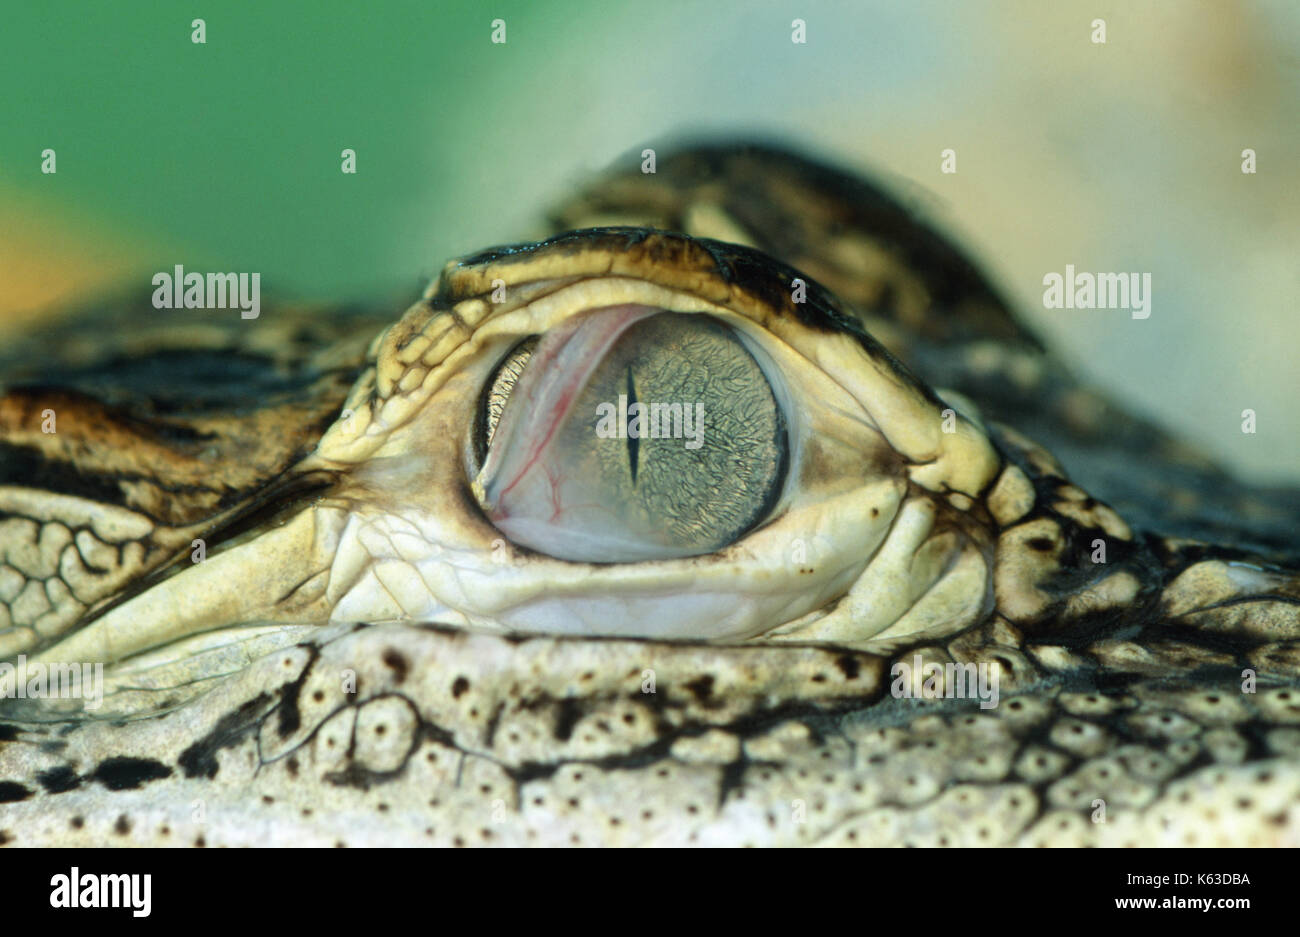 American Alligator Alligator mississippiensis. Close up dell'occhio destro che mostra il traslucido terzo occhio coperchio o membrana nictitaing, stirate acr Foto Stock